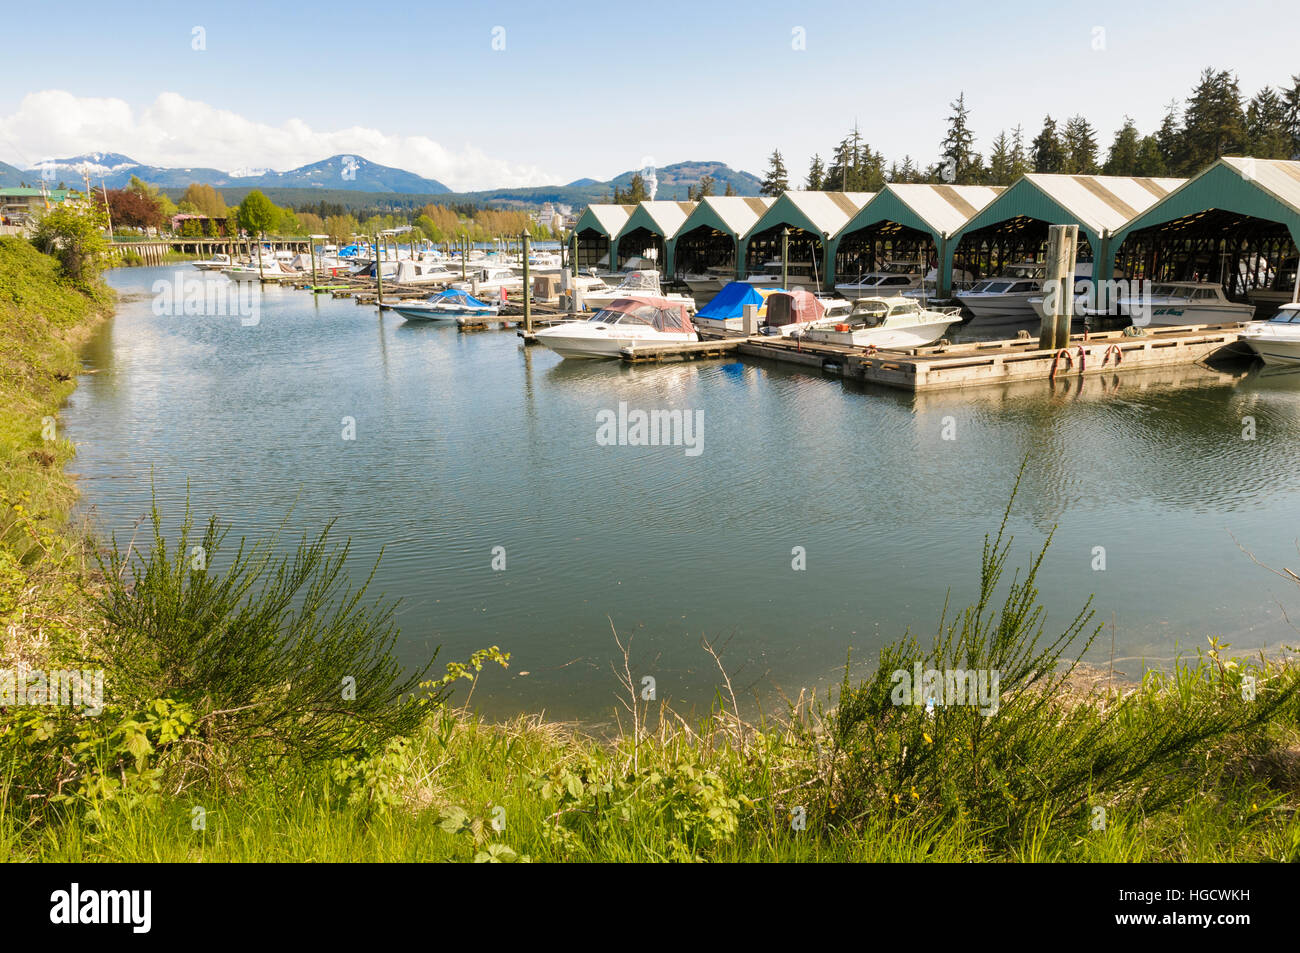 Le port de Port Alberni, sur l'île de Vancouver, Colombie-Britannique, Canada Banque D'Images